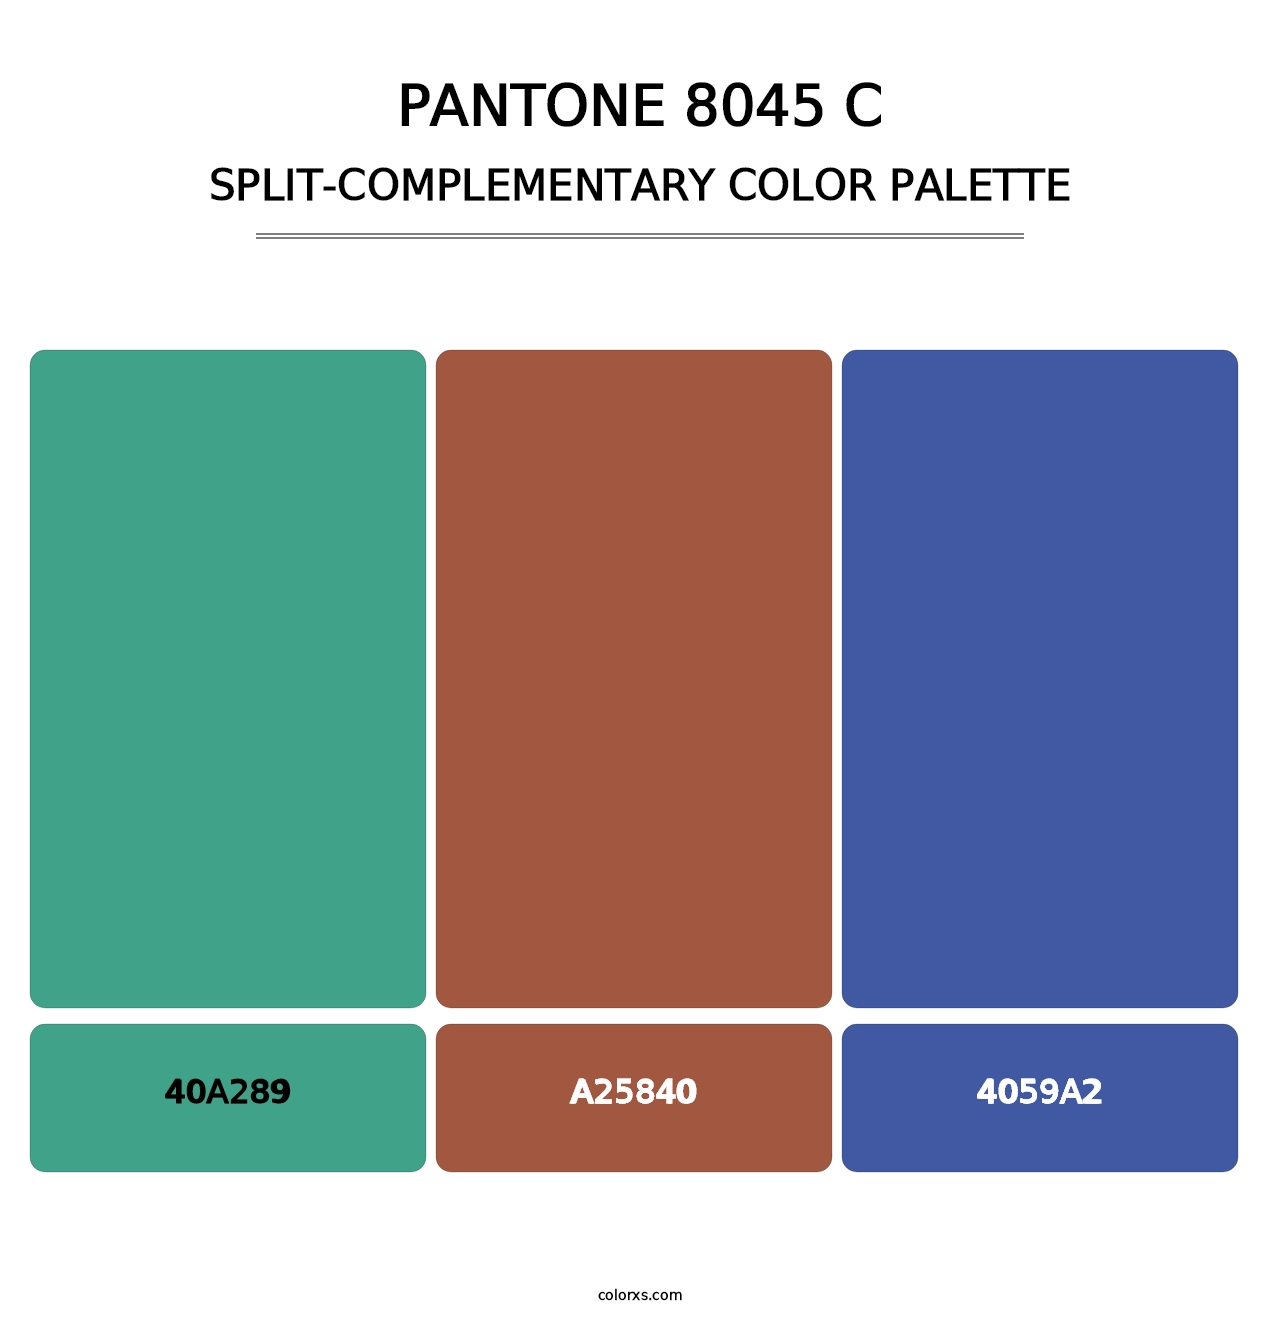 PANTONE 8045 C - Split-Complementary Color Palette